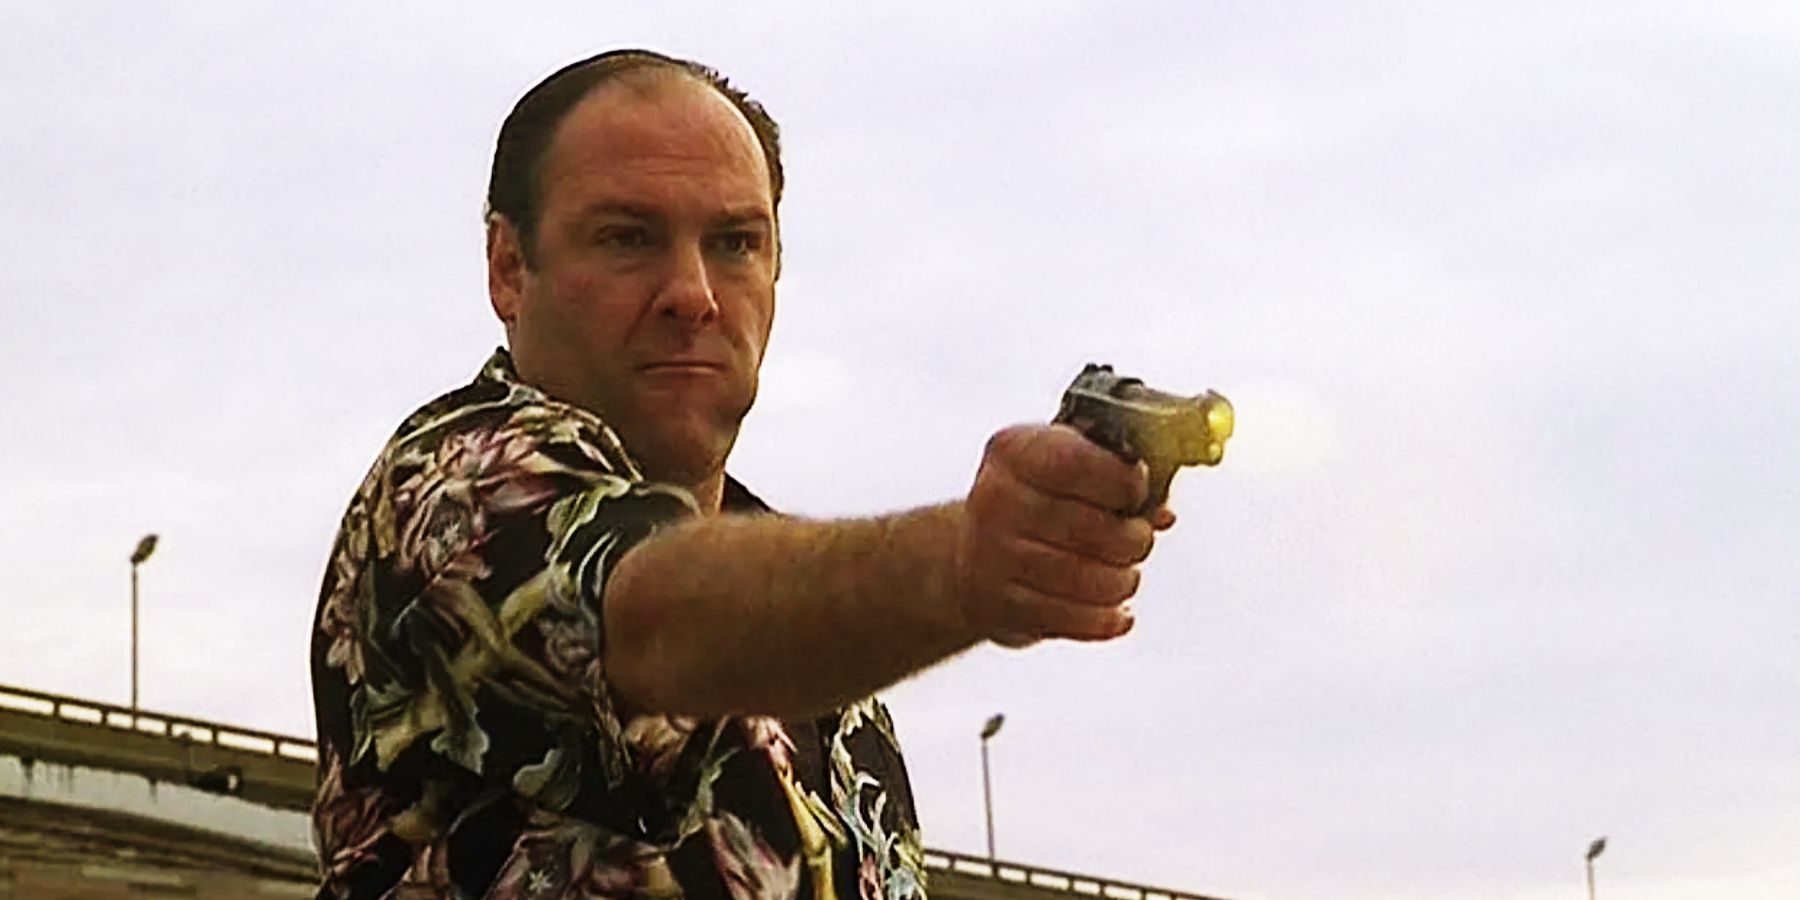 Tony Soprano em sua camisa preta floral matadora, batendo em Chucky Signore